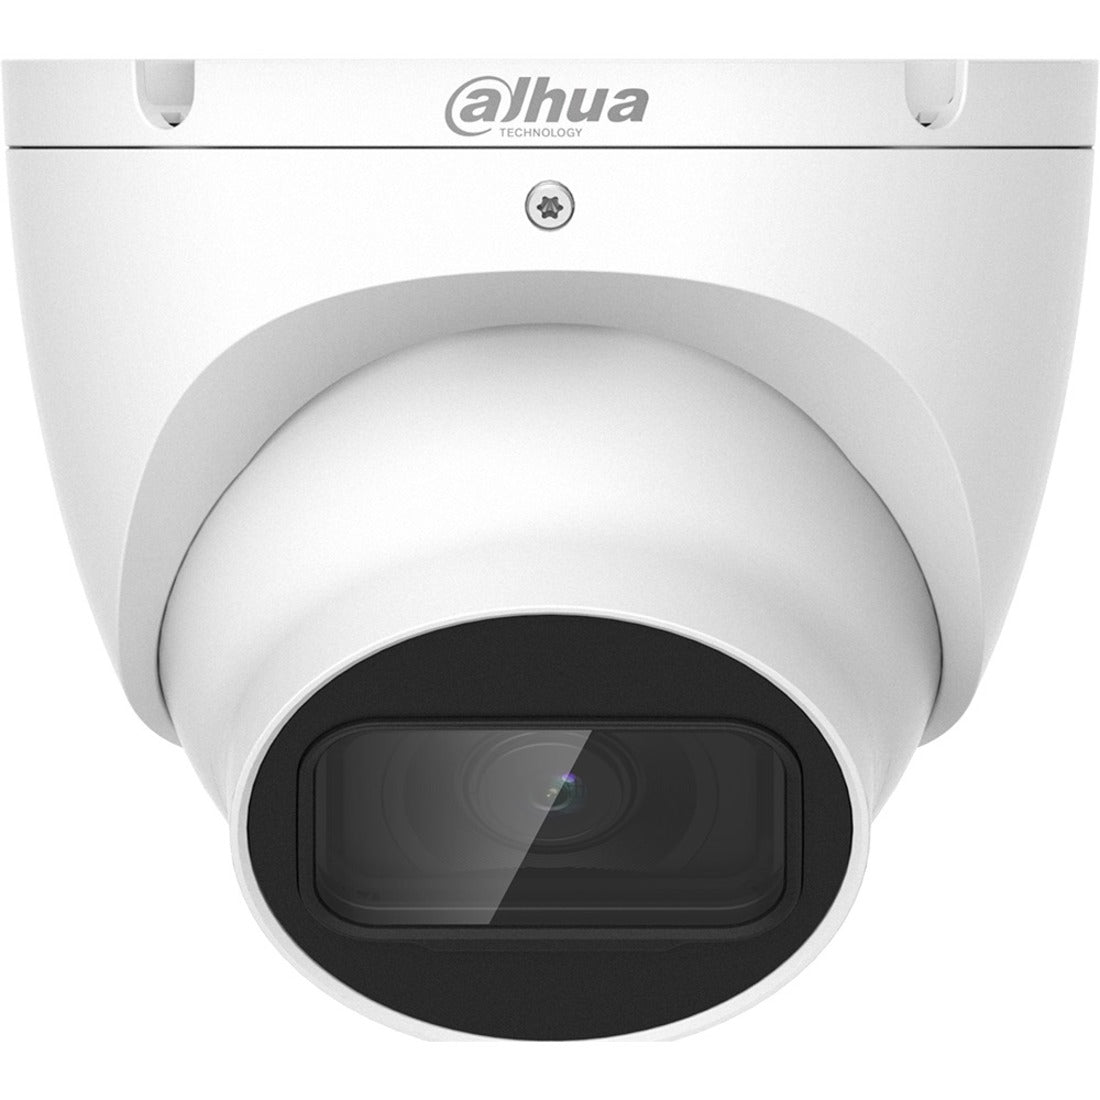 Dahua A51BJ02 Lite 5MP HD Surveillance Camera - Outdoor, 2.8mm Lens, 30fps, IP67